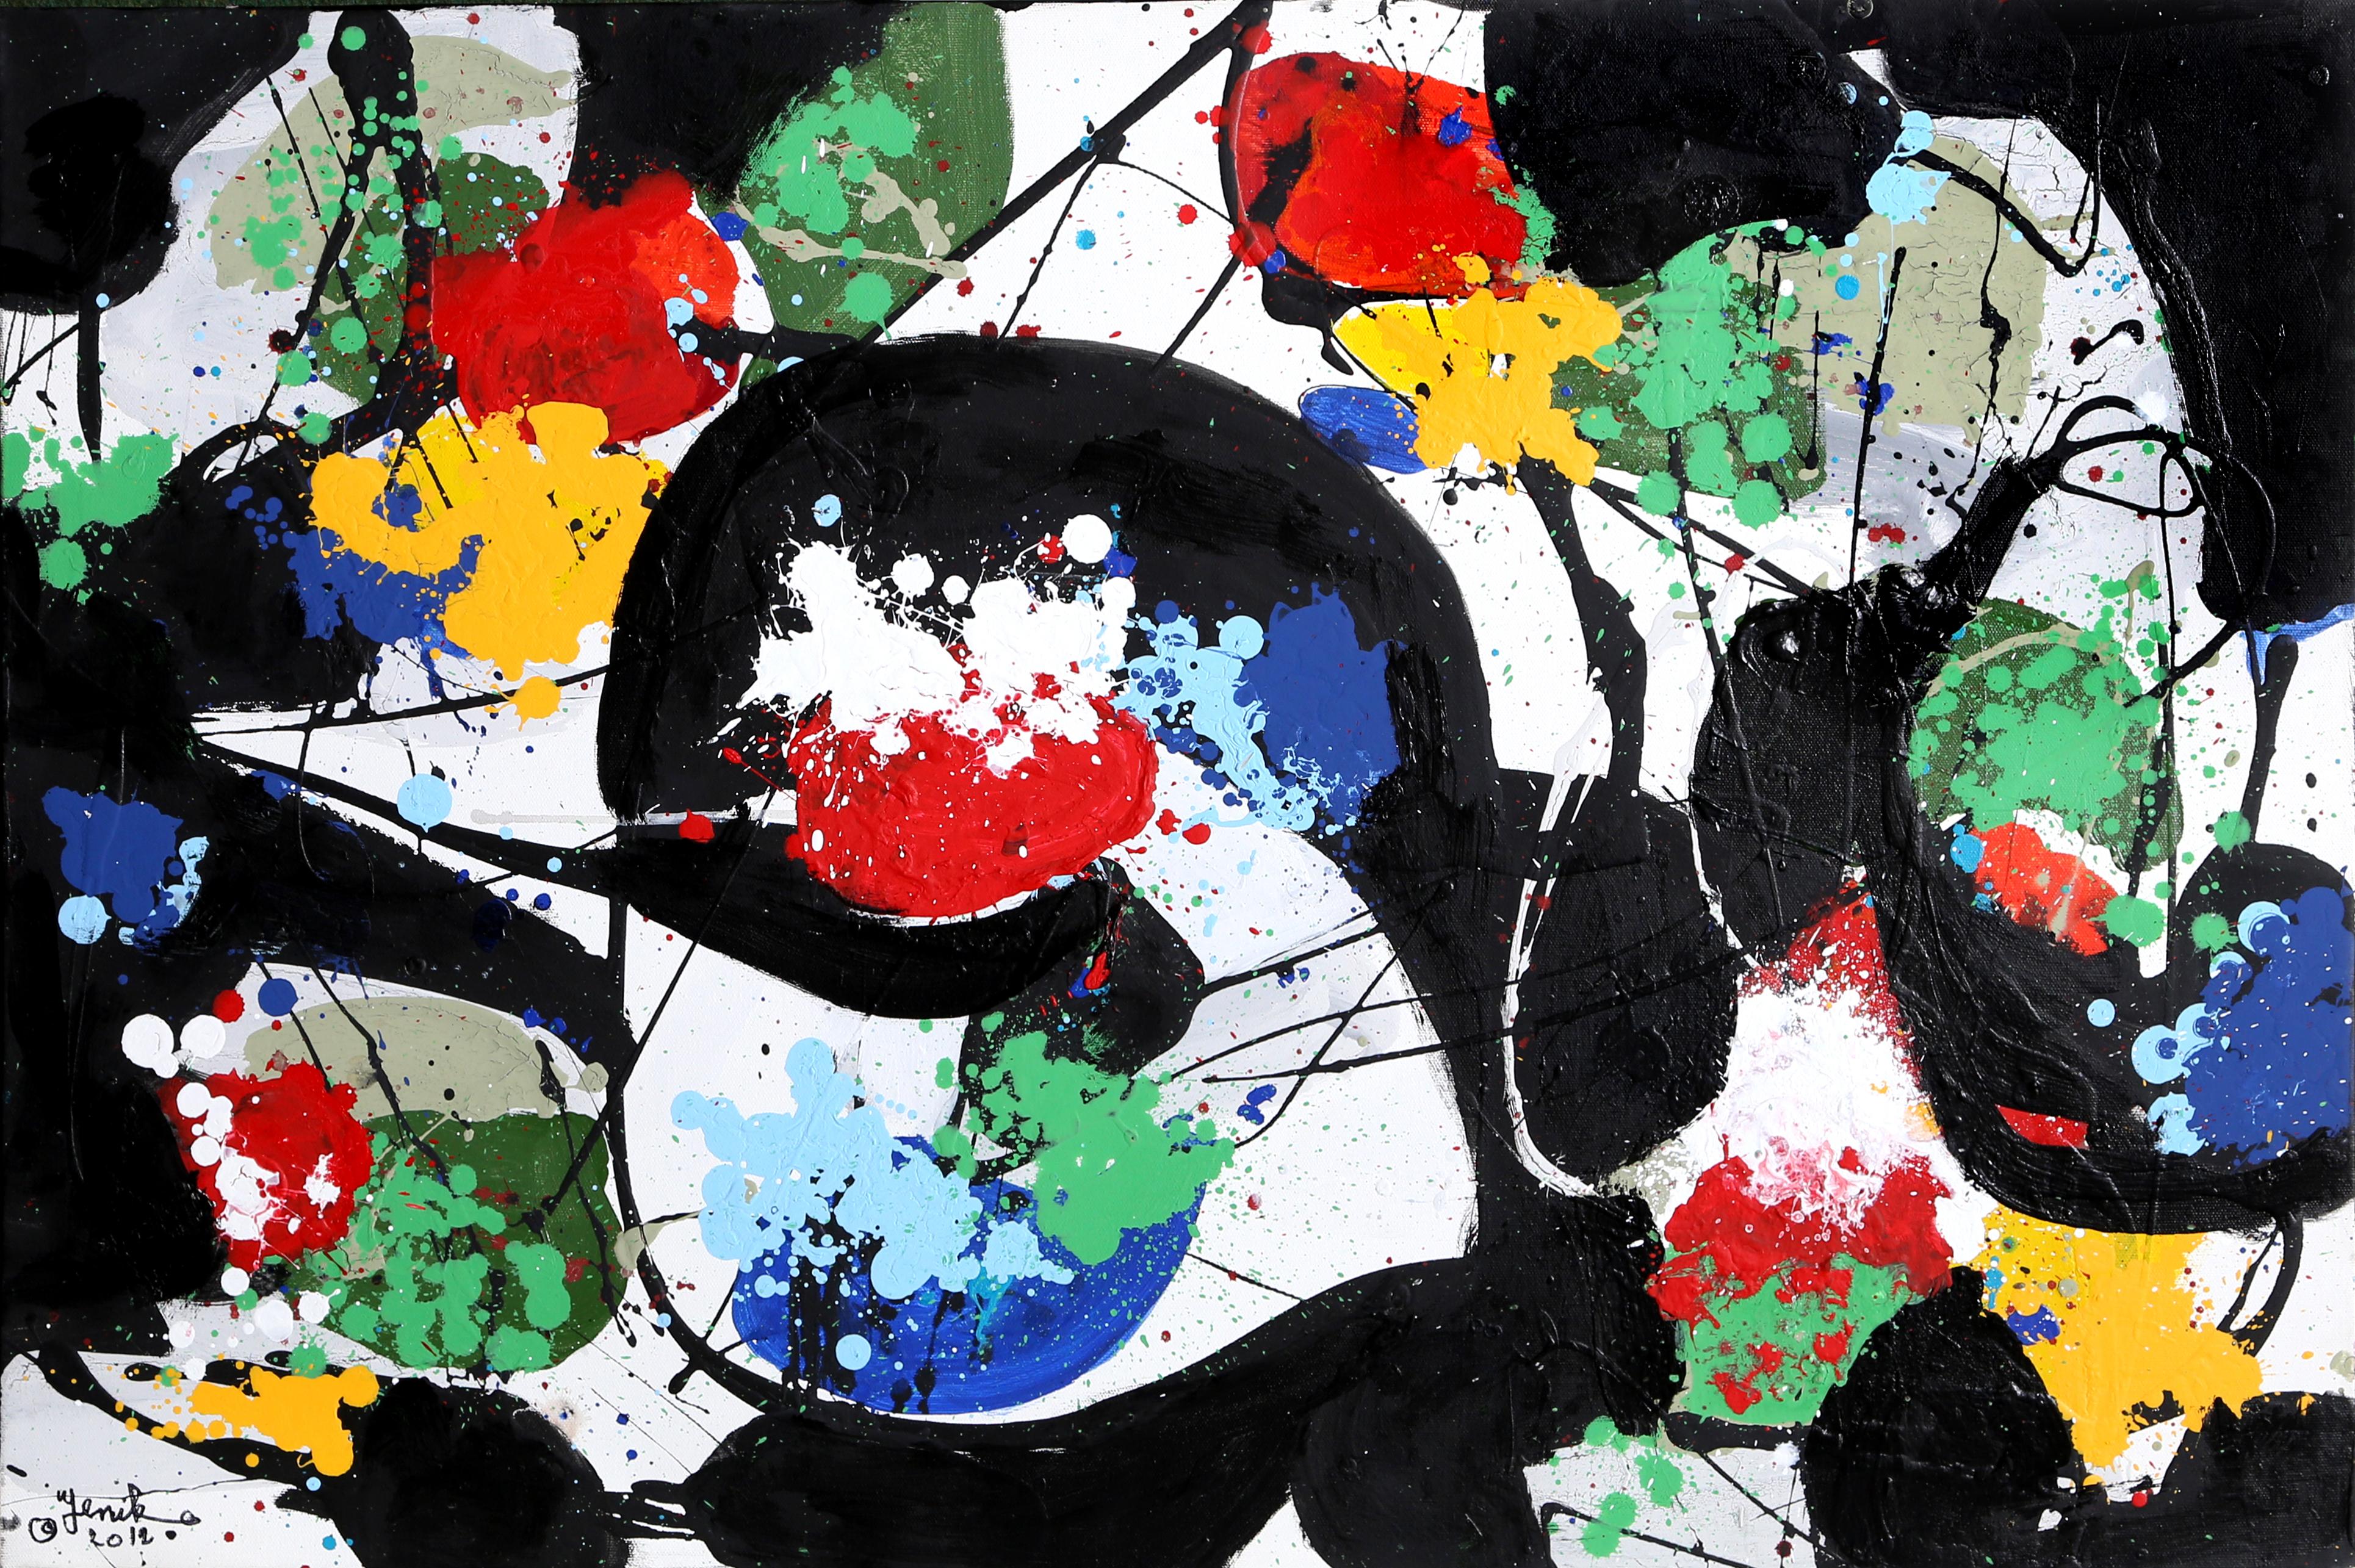 Artistics : Jenik Cook, Américain (1940 - )
Titre : Composition abstraite I
Année : 2012
Moyen d'expression : Huile sur toile, signée et datée à gauche et au verso
Taille : 24 x 36 in. (60.96 x 91.44 cm)